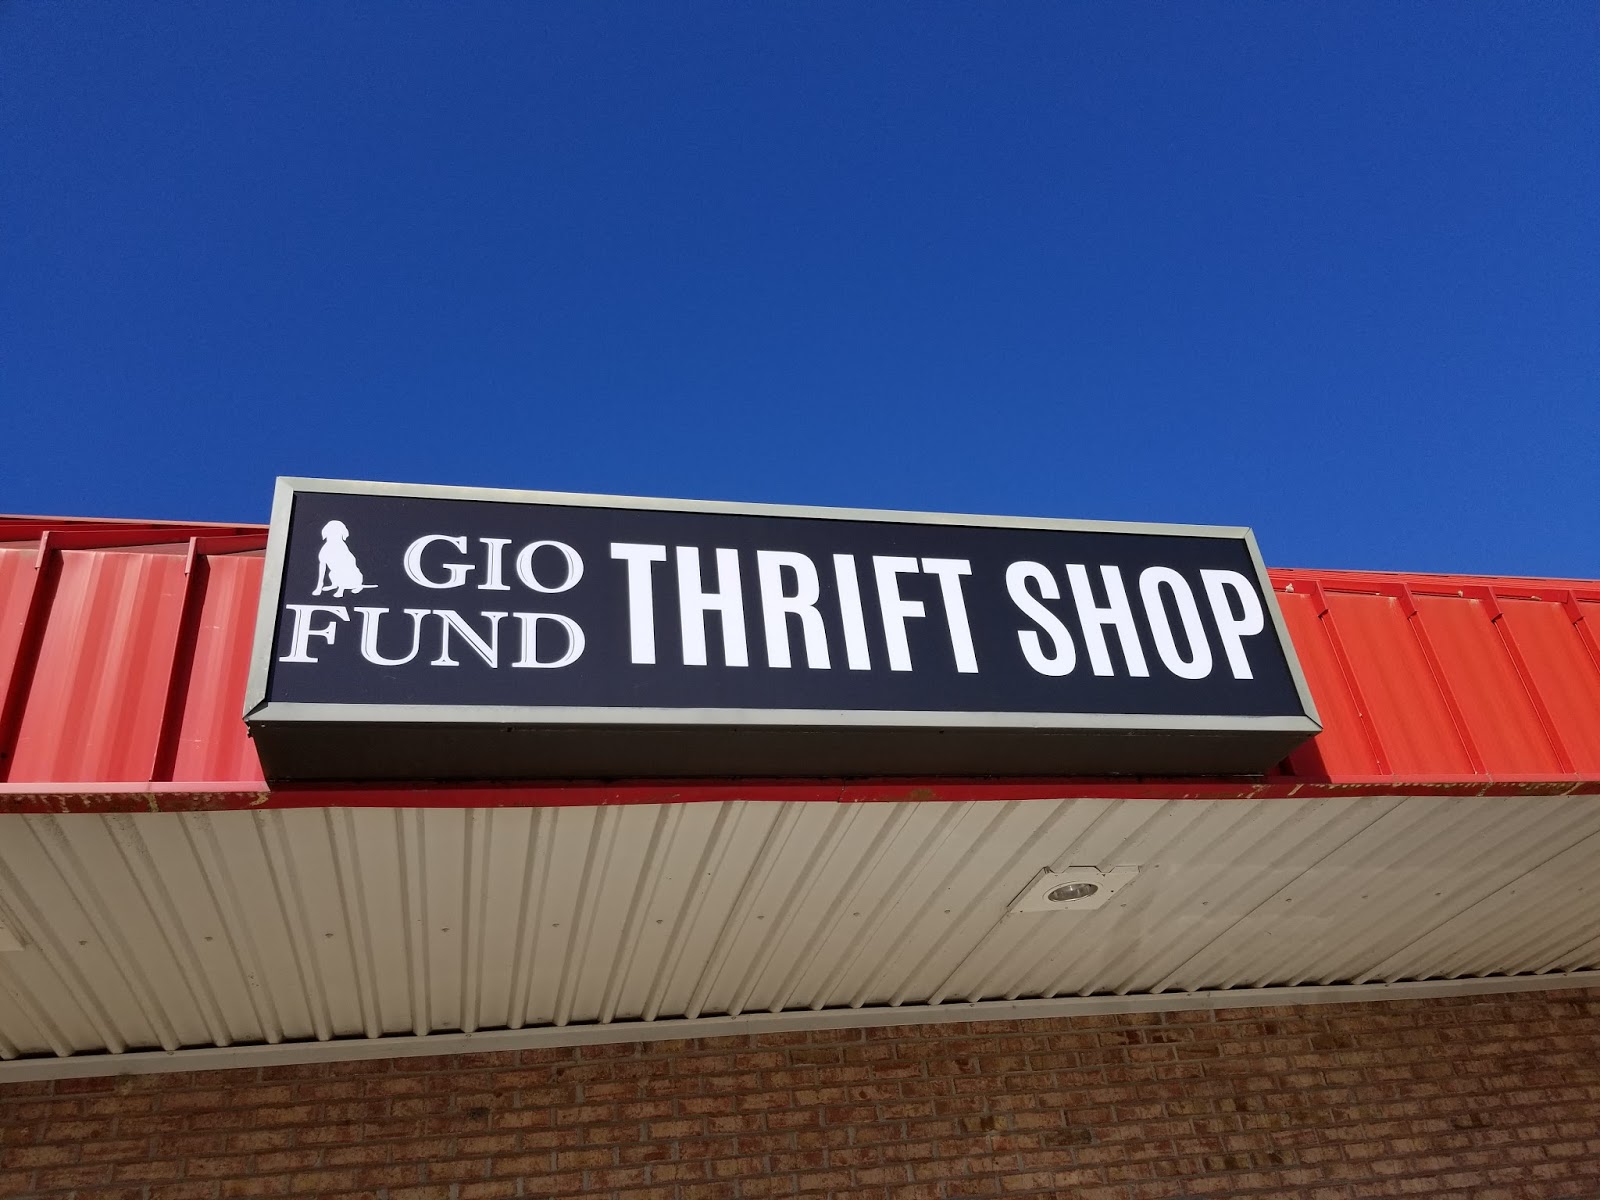 Gio Fund: Thrift Shop